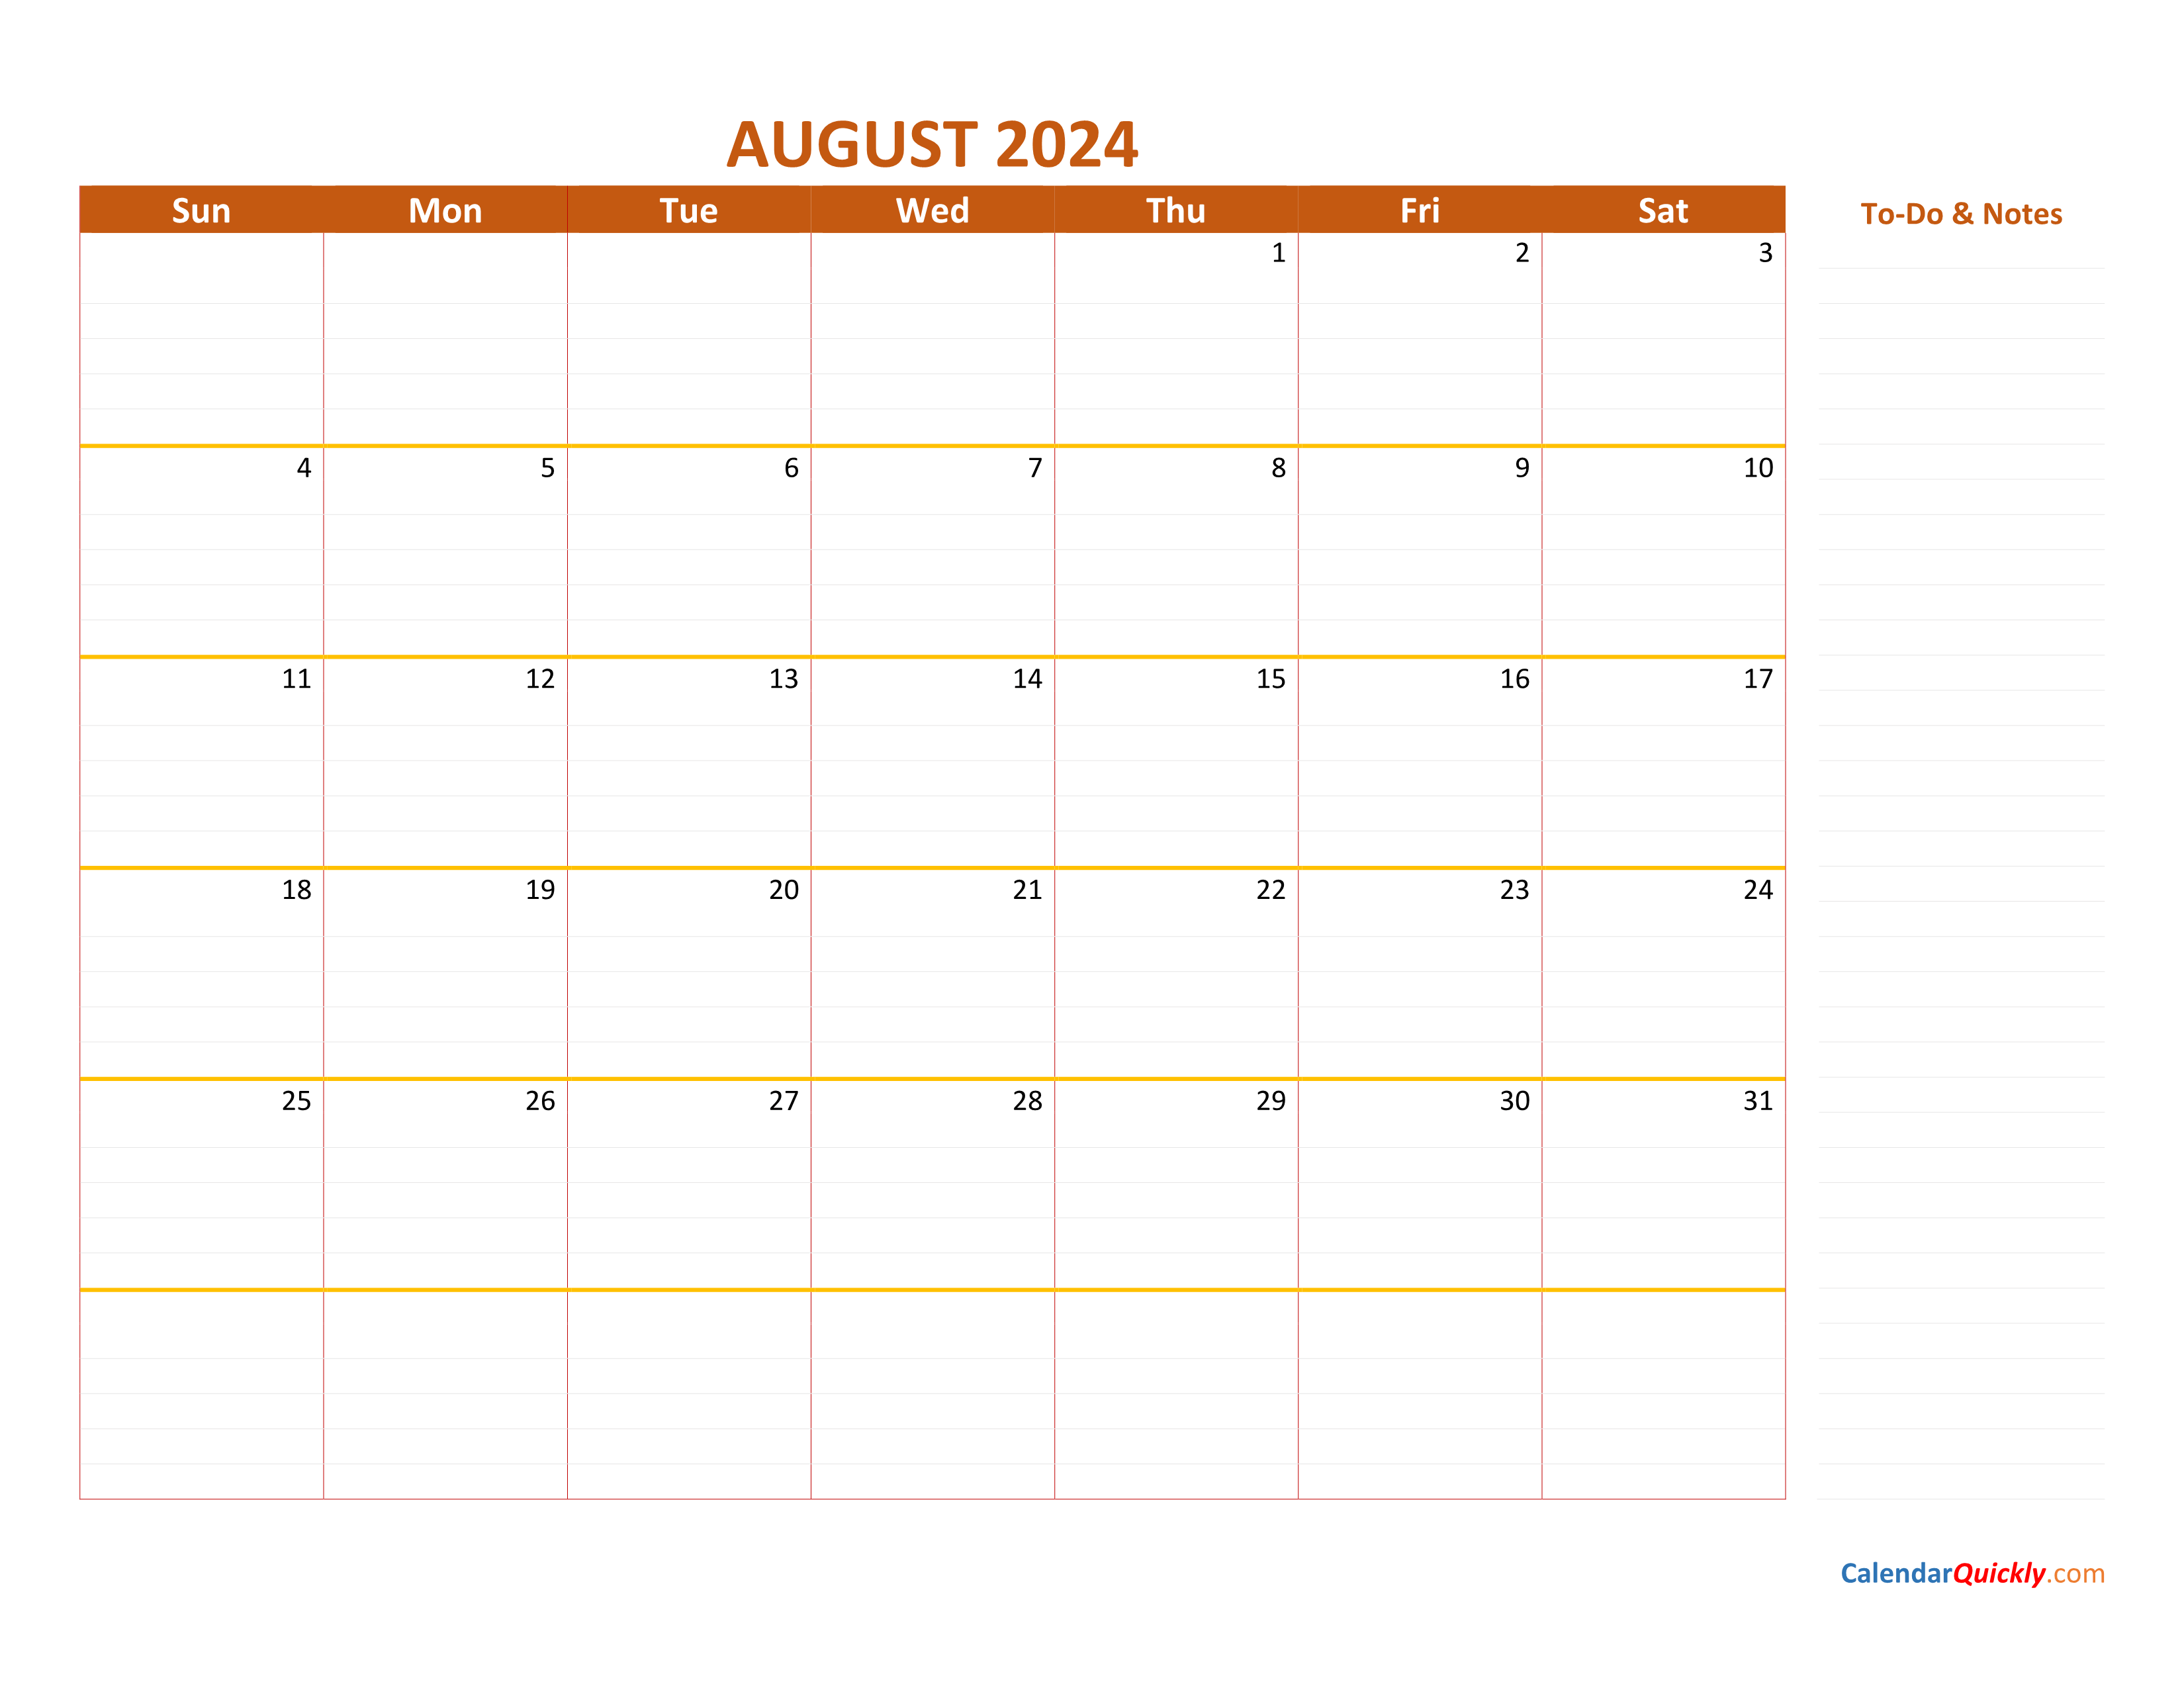 august-2024-calendar-calendar-quickly